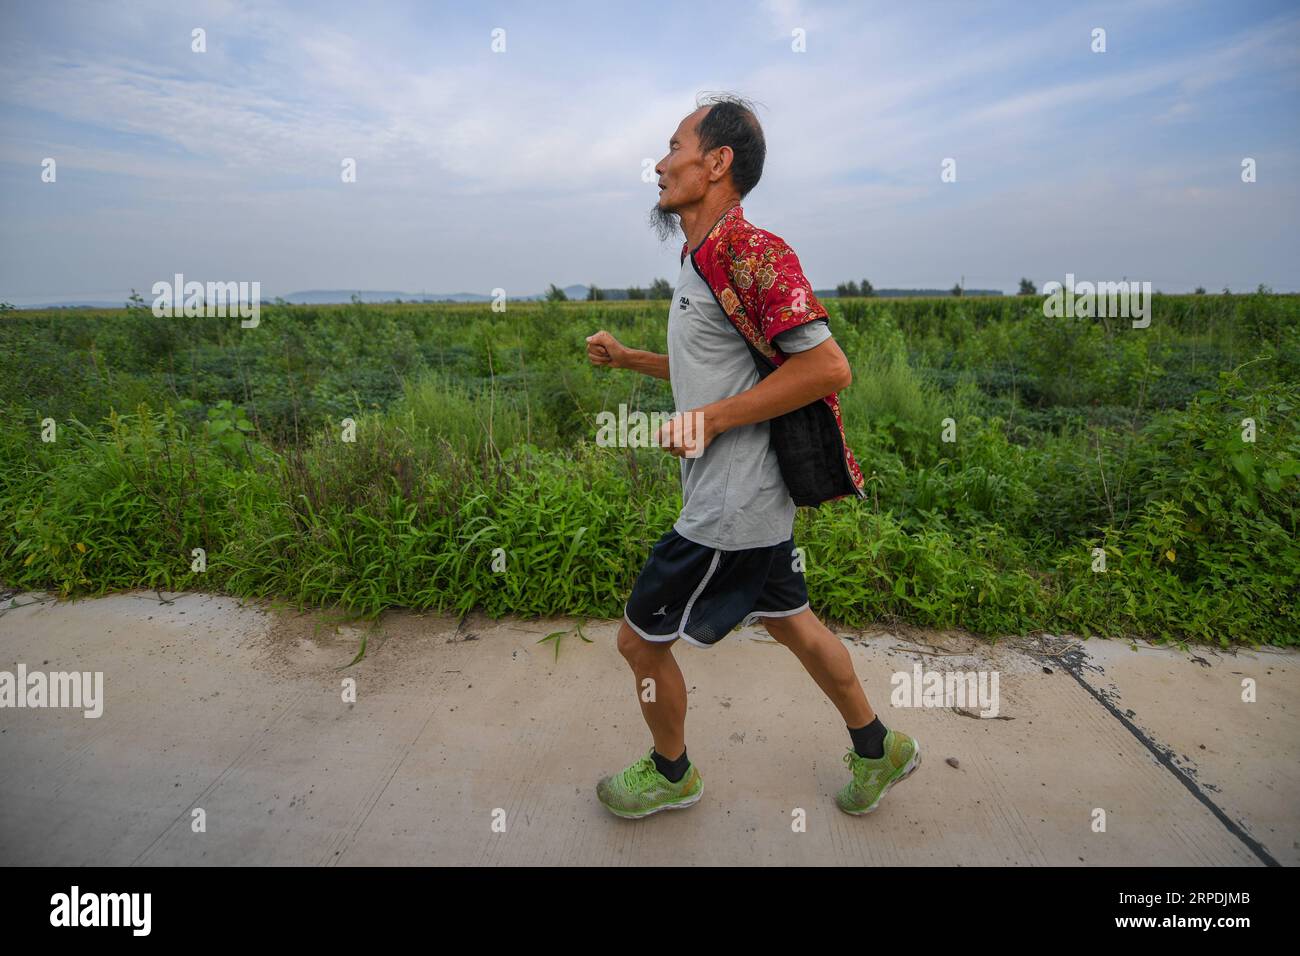 (190806) -- CHANGCHUN, 6 agosto 2019 -- alto e sottile, con una barba ovvia e una sorprendente giacca rossa imbottita in cotone fiorito, Xi Zhanyu, 63 anni, ha tagliato una figura distintiva correndo nel campo nel villaggio rurale di Taku, vicino alla città nordorientale della Cina di Changchun. I vestiti appartenevano alla mia defunta moglie Xia Shuyun. Volevo correre con lei. XI ha detto. Nel 2015, a Xia fu diagnosticato un cancro ai polmoni. Quando è morta, Xia ha sentito che aveva ancora molto da fare. Poi ho iniziato a correre per vedere se mi avrebbe dato conforto, ha detto. Da quel momento in poi, ogni giorno, con la pioggia o il sole, gli abitanti del villaggio vedranno Xi correre fr Foto Stock